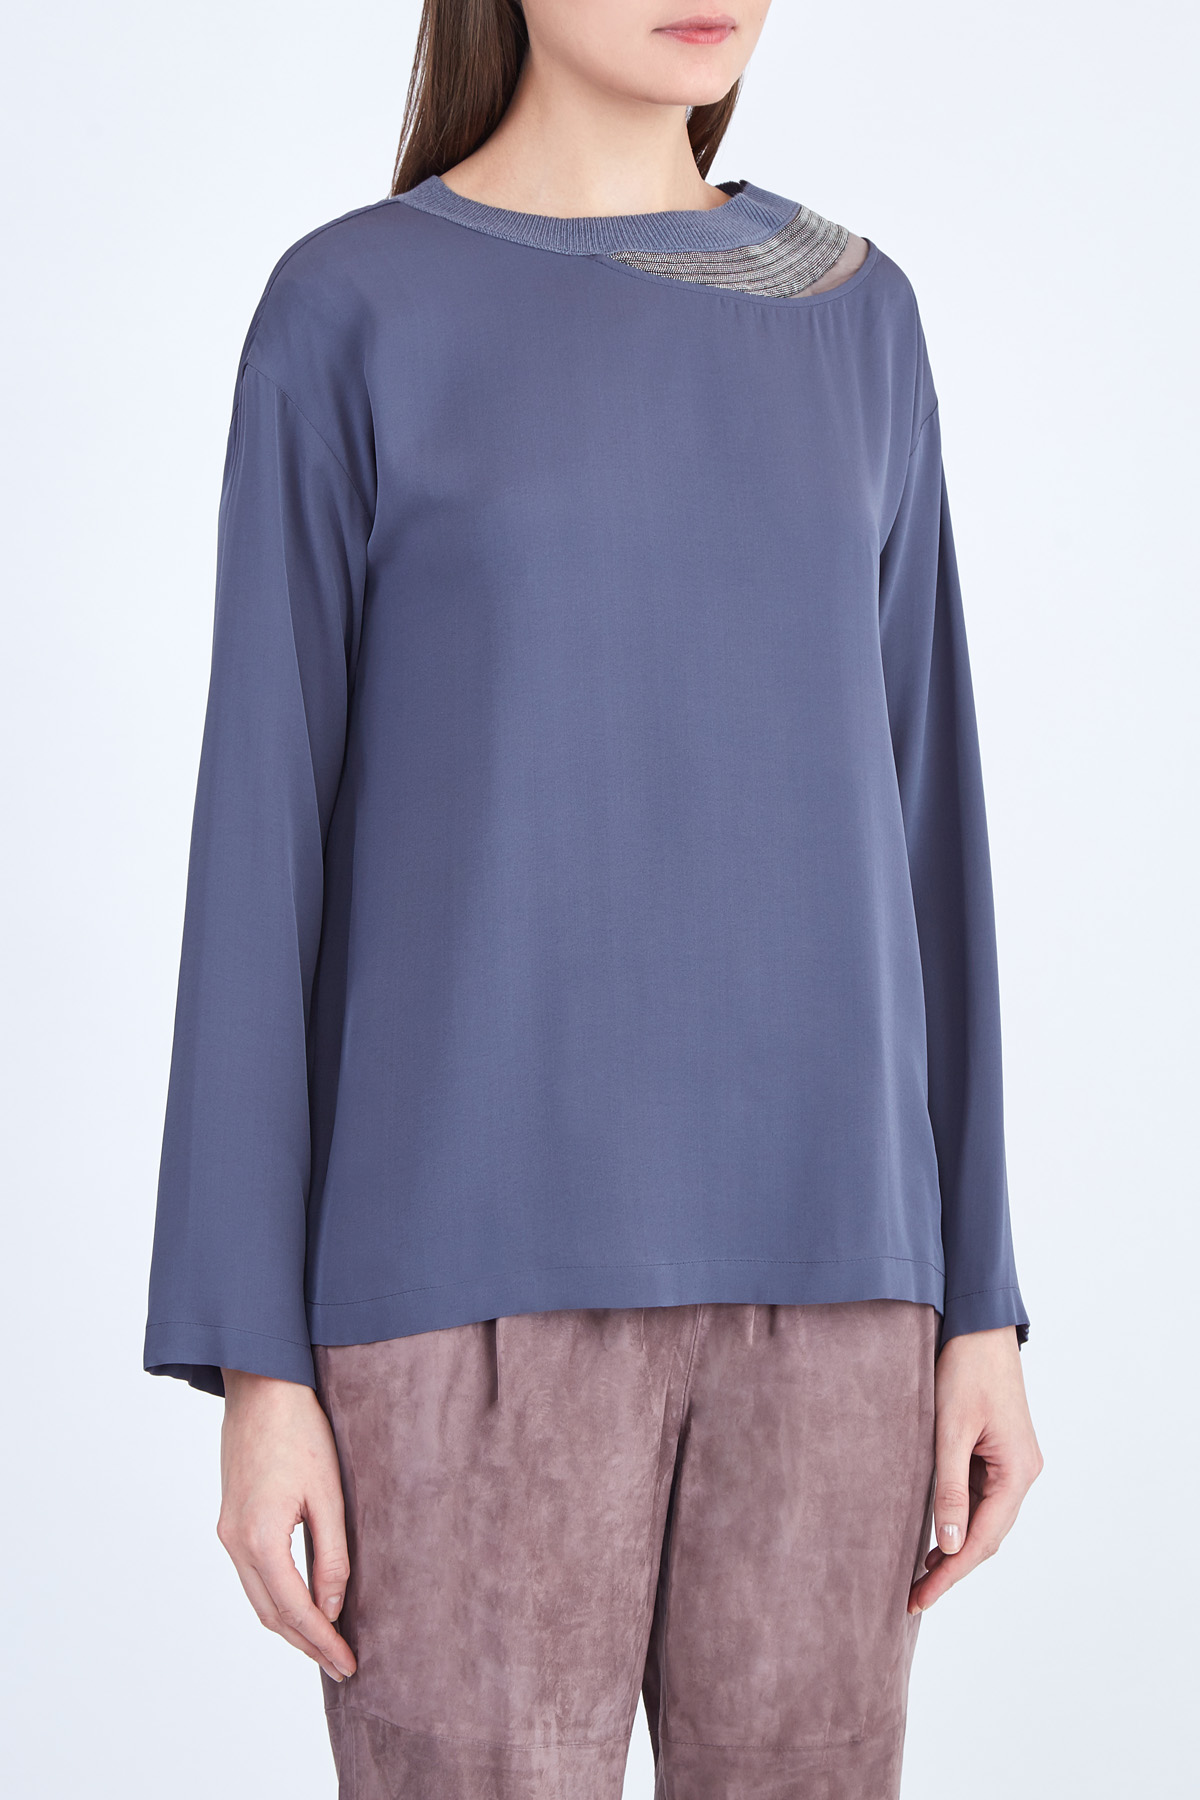 Шелковая блузка с трикотажным воротом, разрезом и цепочками бусин FABIANA FILIPPI, цвет синий, размер 44 - фото 3